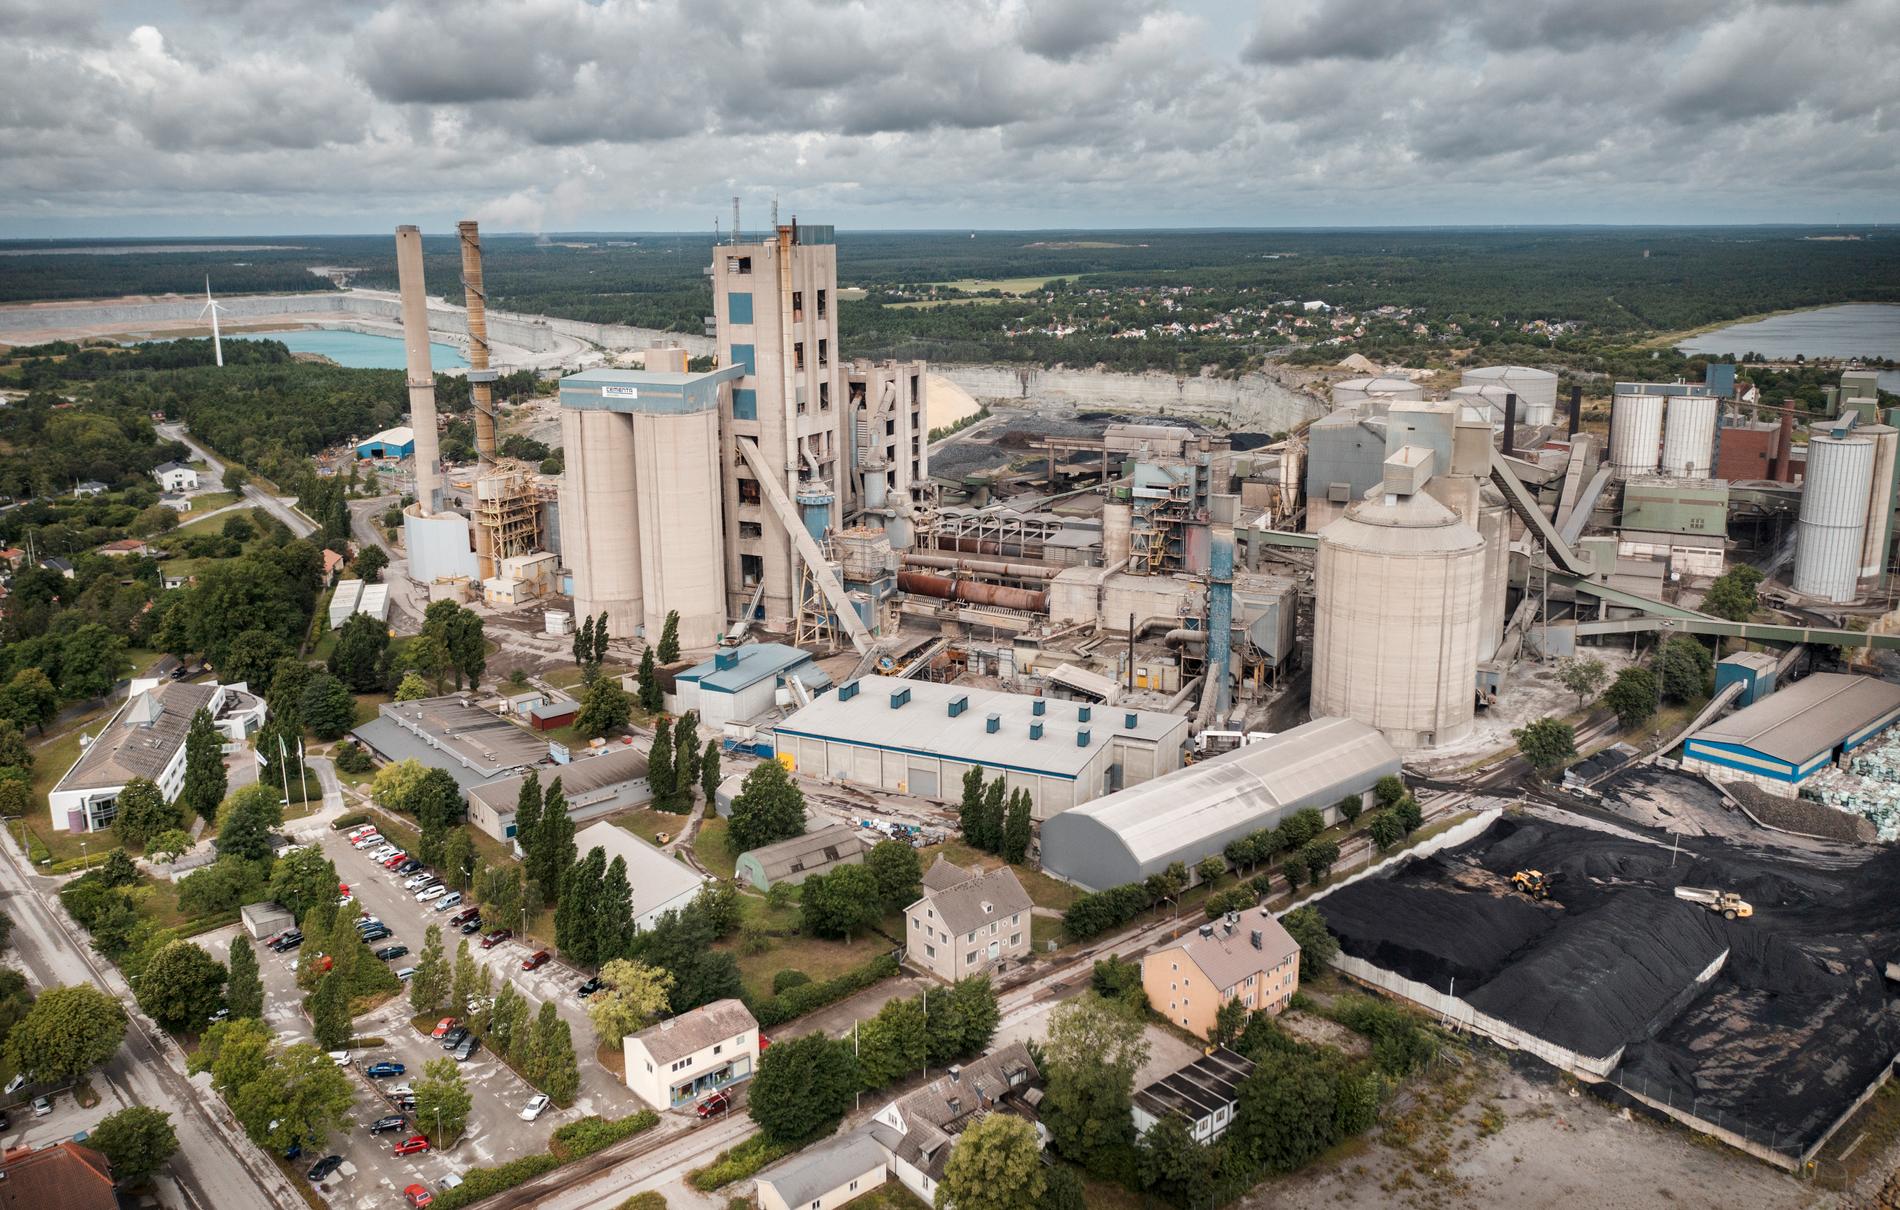 Ska Cementas fabrik i Slite på Gotland få fortsätta att tillverka cement? Arkivbild.